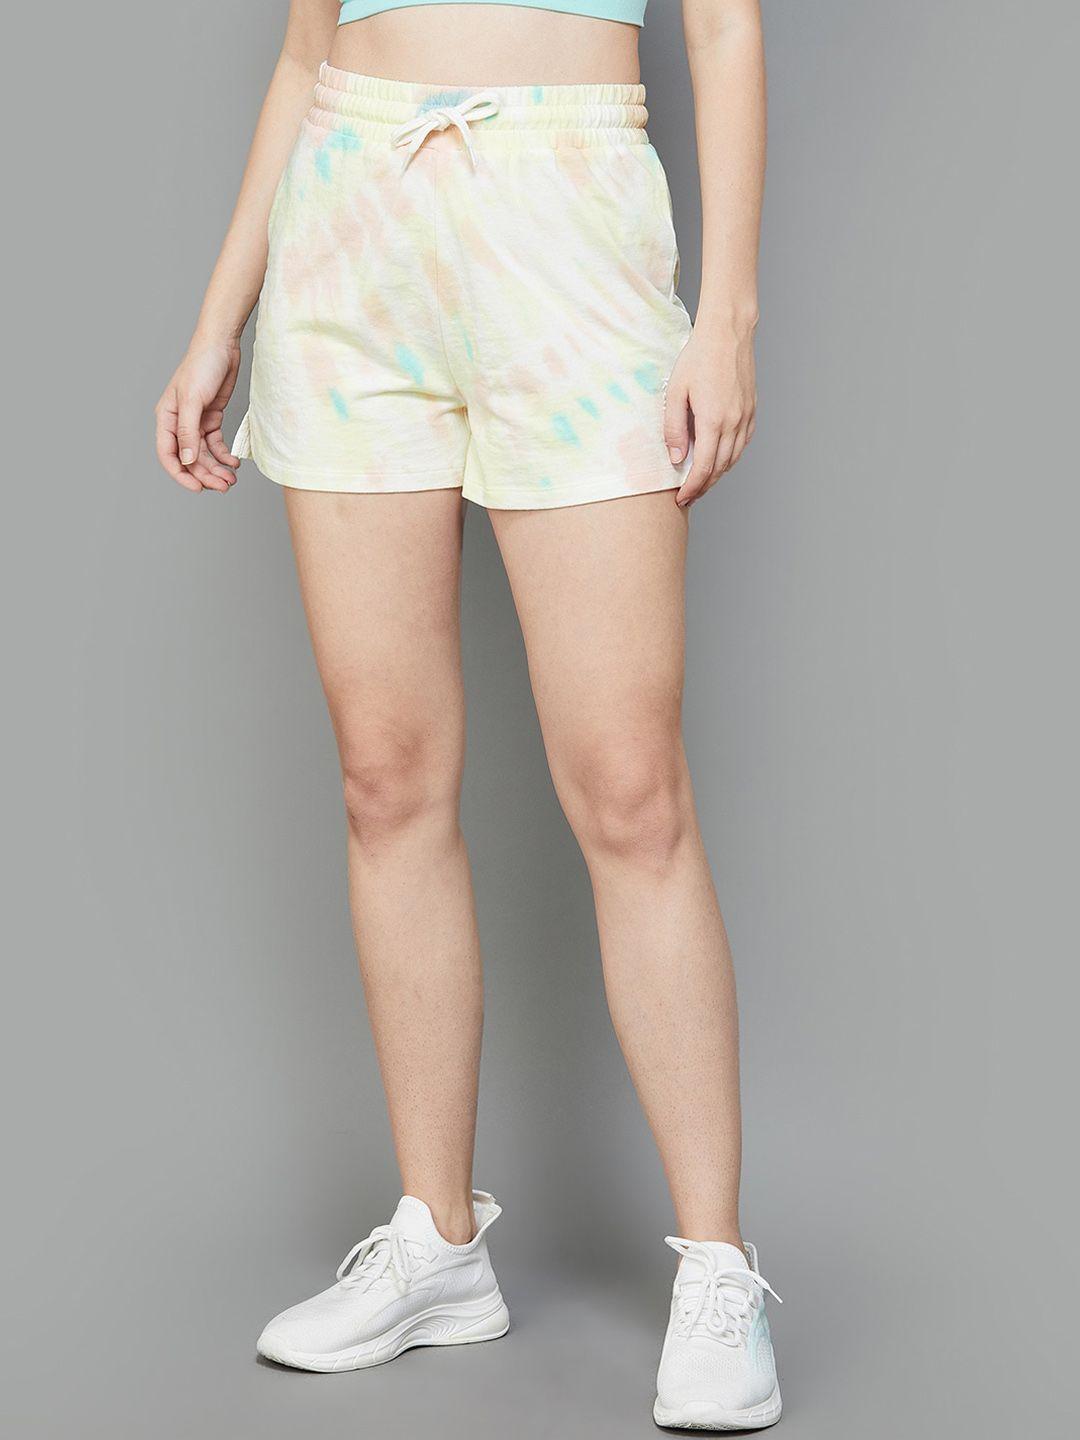 kappa-women-abstract-printed-shorts